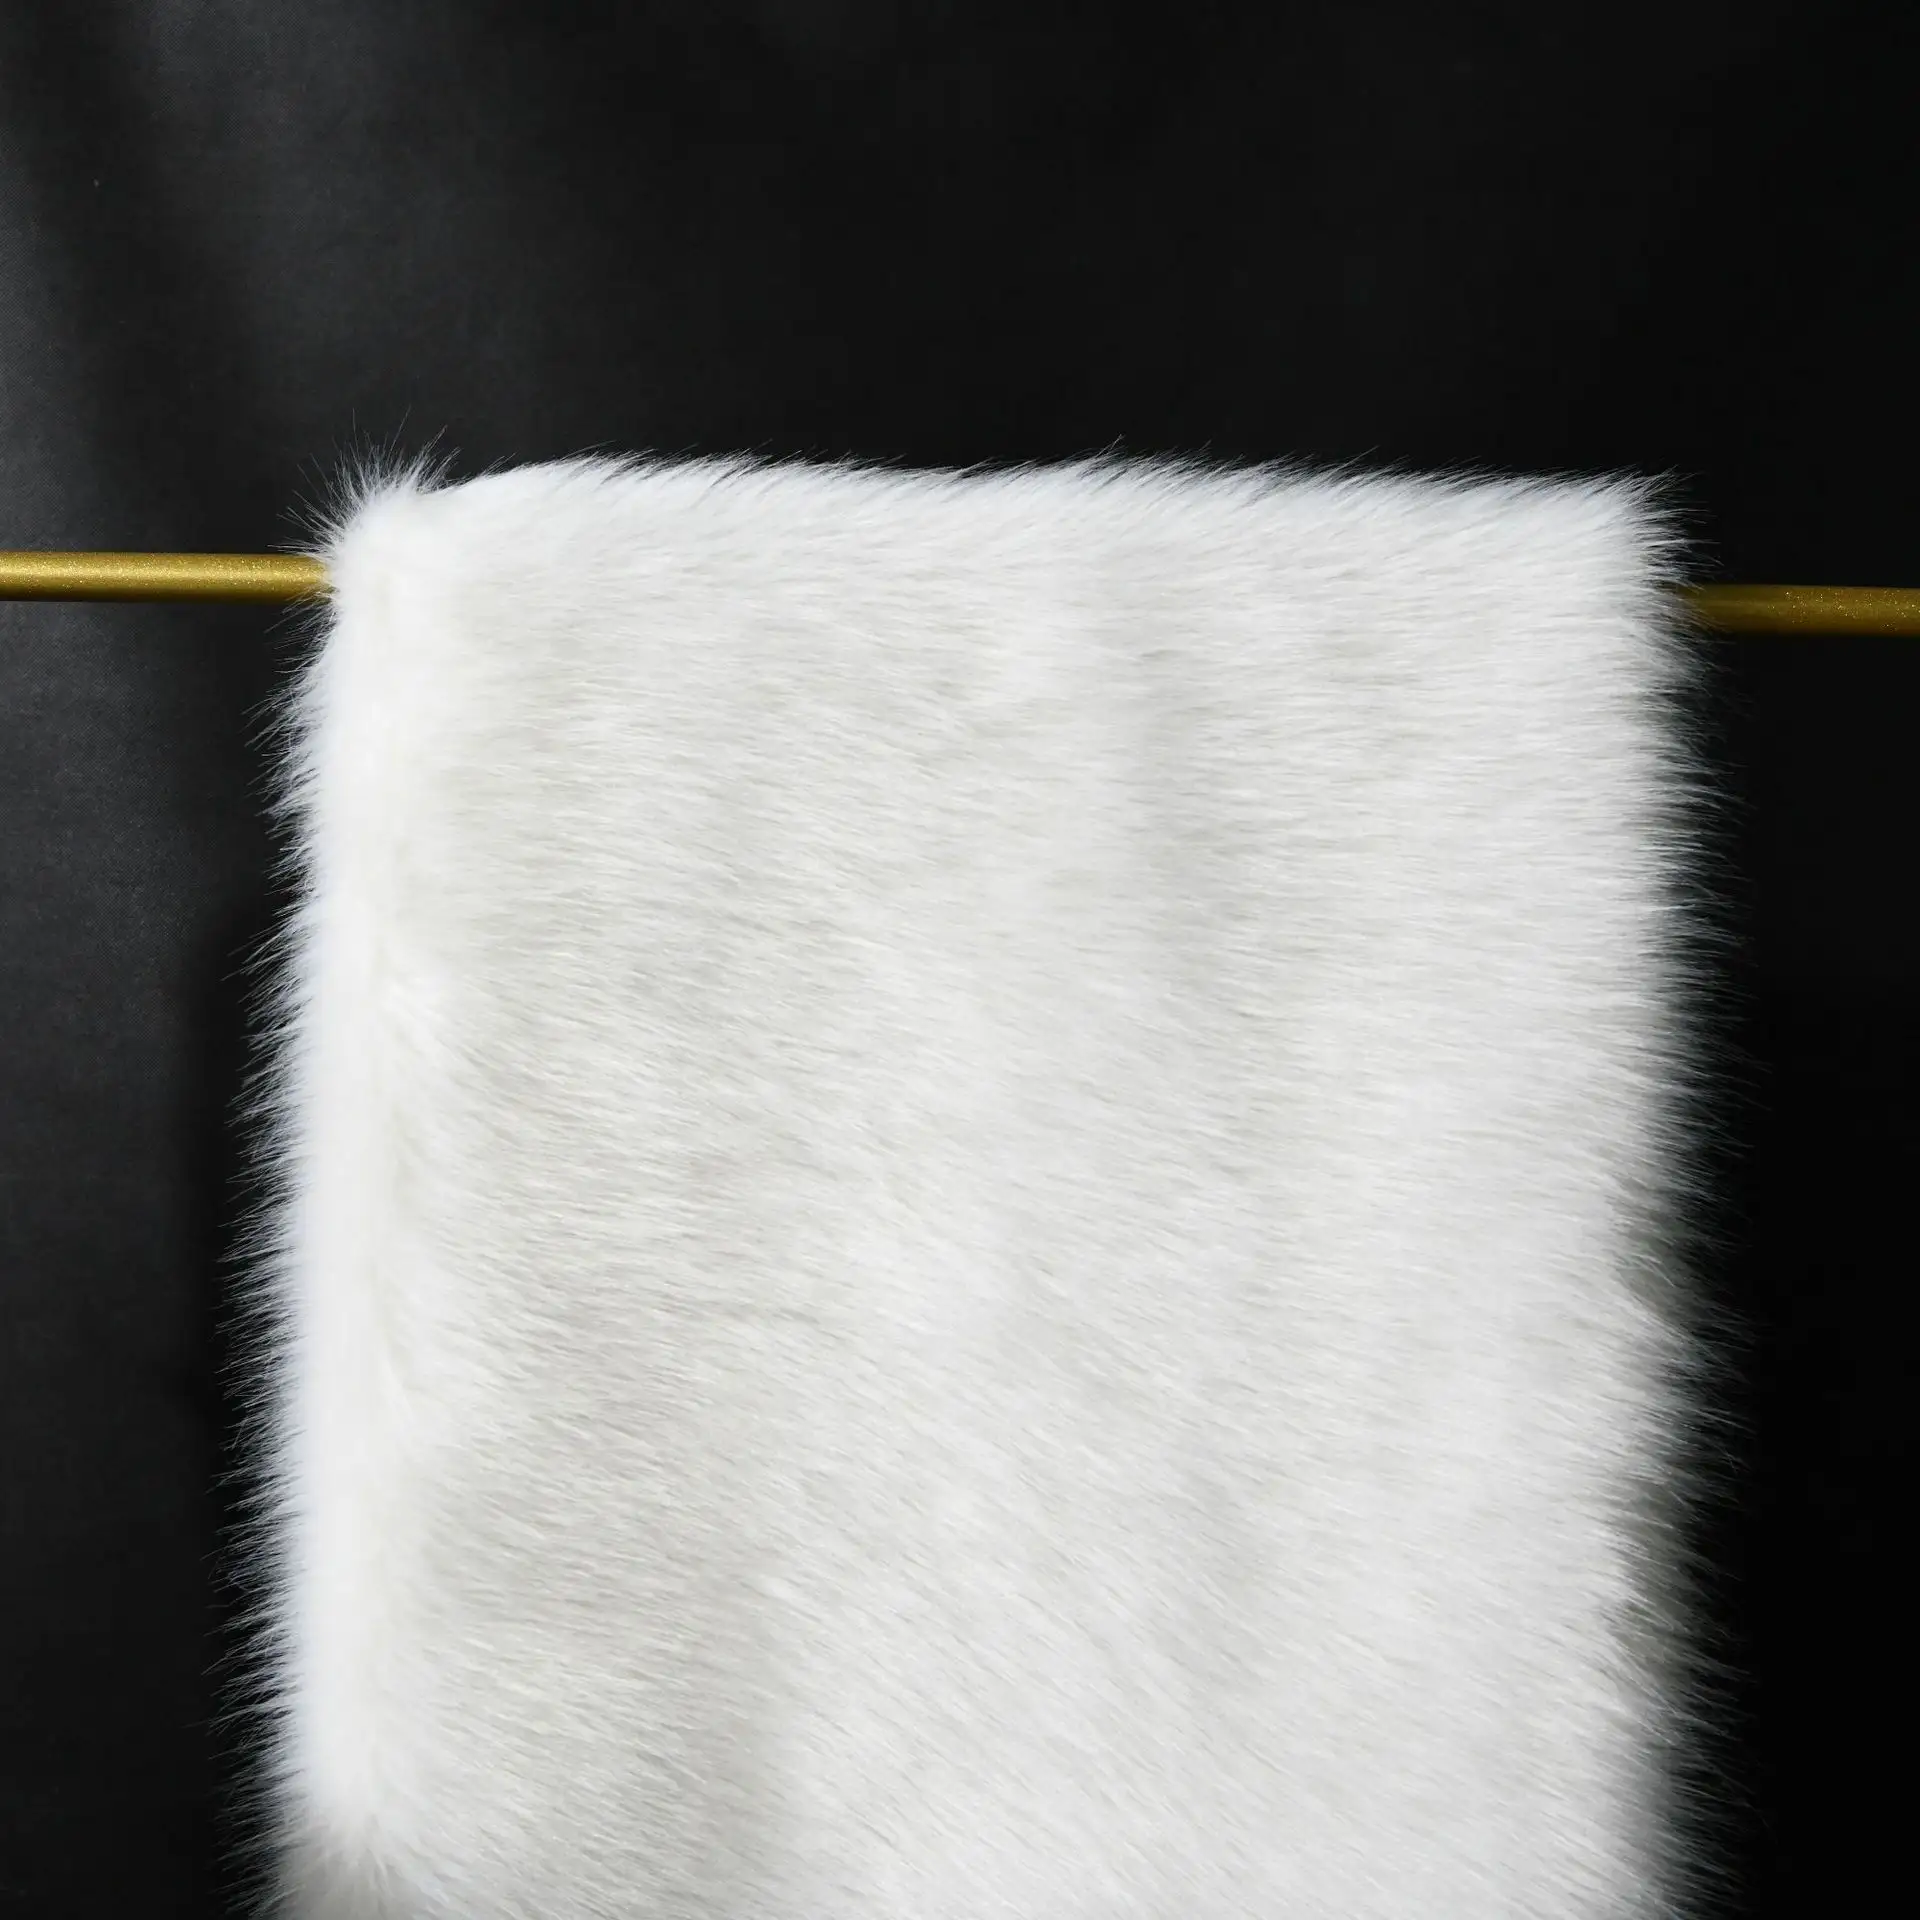 Harga lebih murah grosir 6cm 7cm tumpukan kain bulu imitasi warna putih, bulu palsu putih untuk setelan Santa/mainan/sofa/furnitur